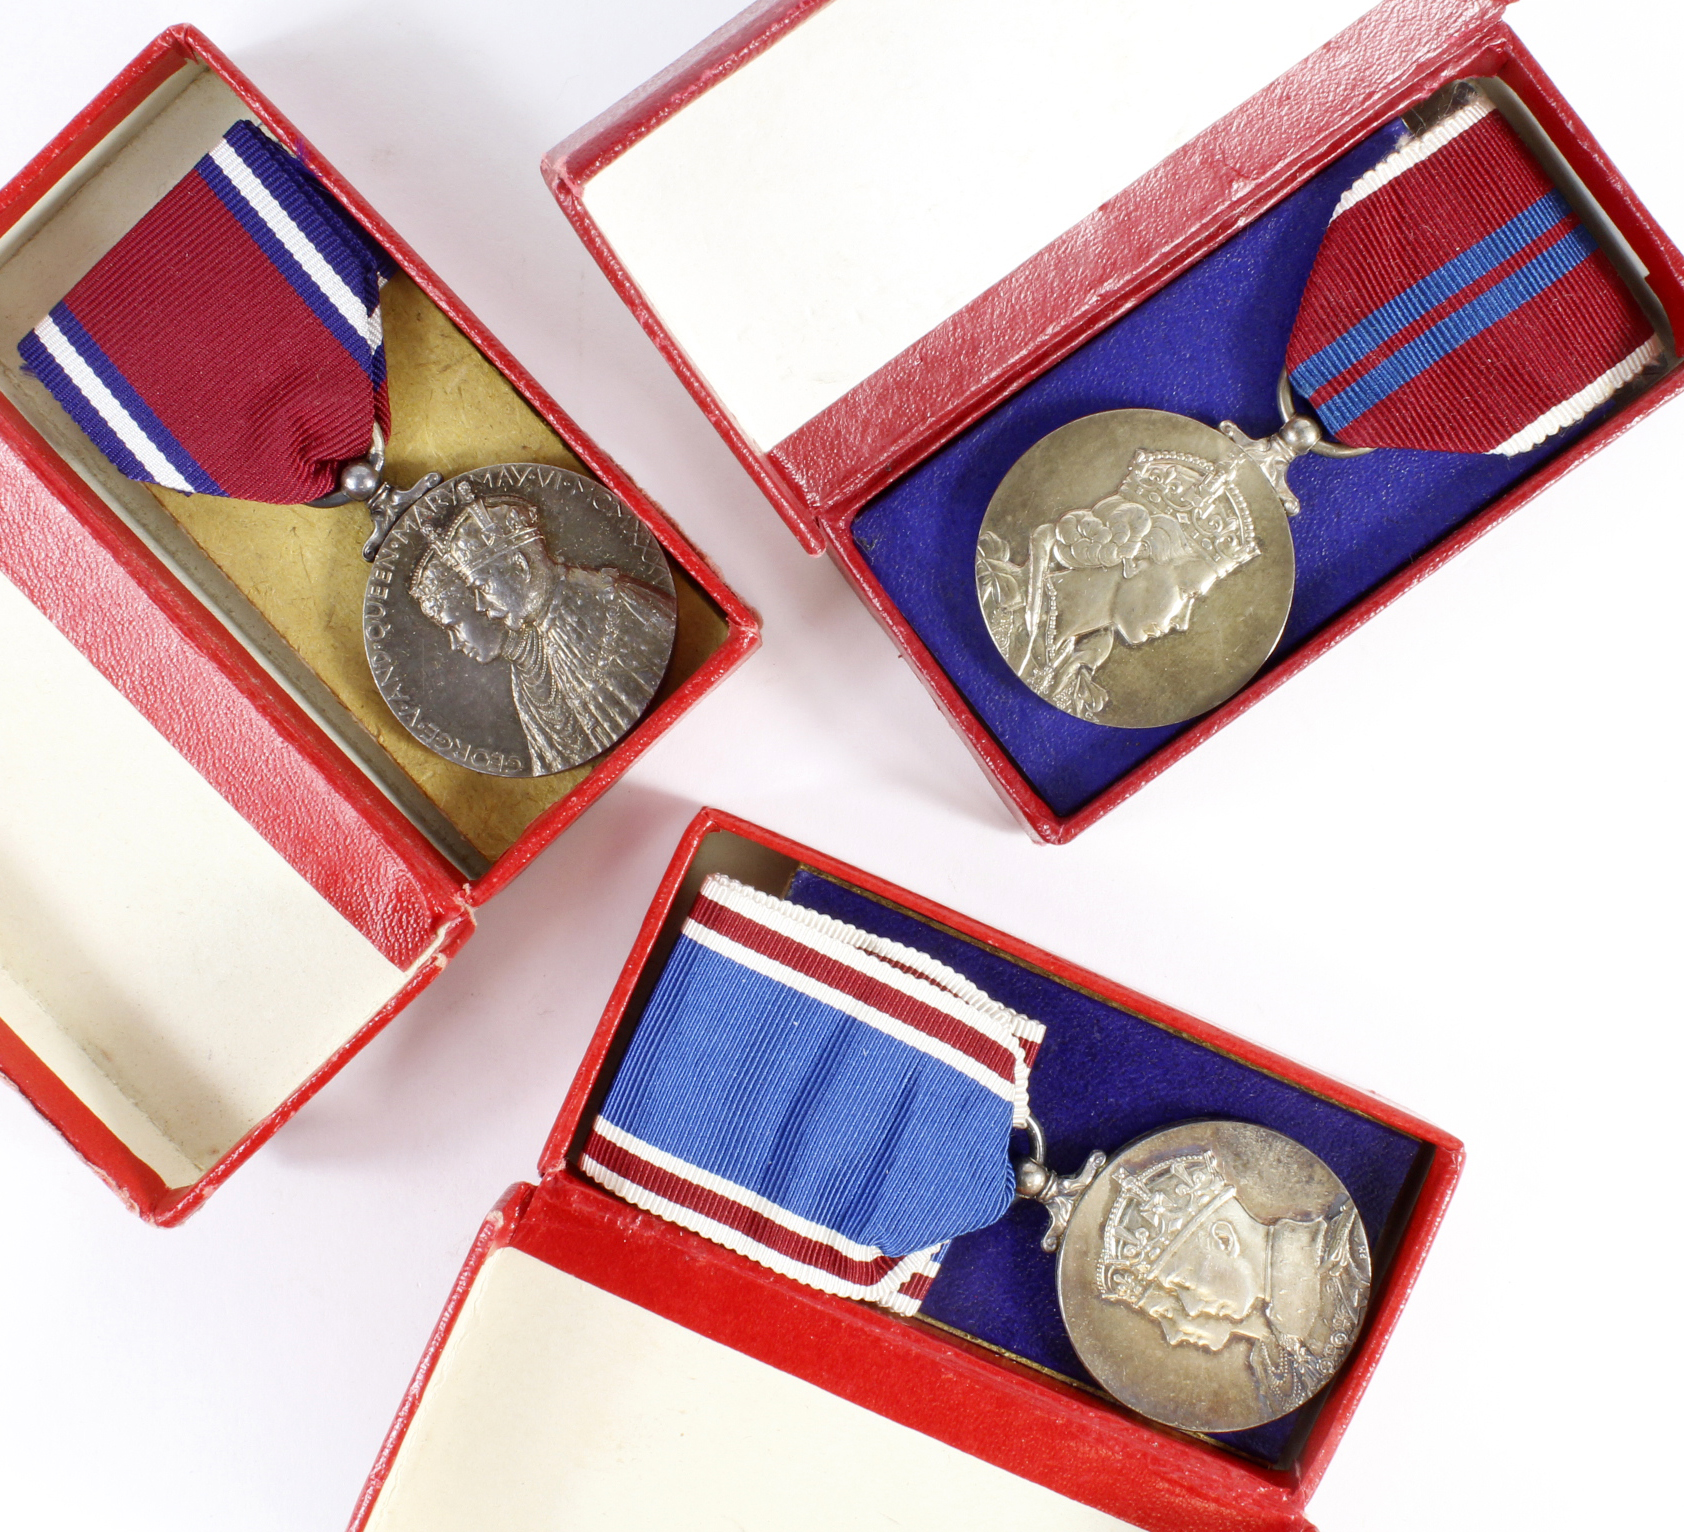 Coronation & Jubilee medals including Jubilee medal 1935, Coronation medal 1937, Coronation medal